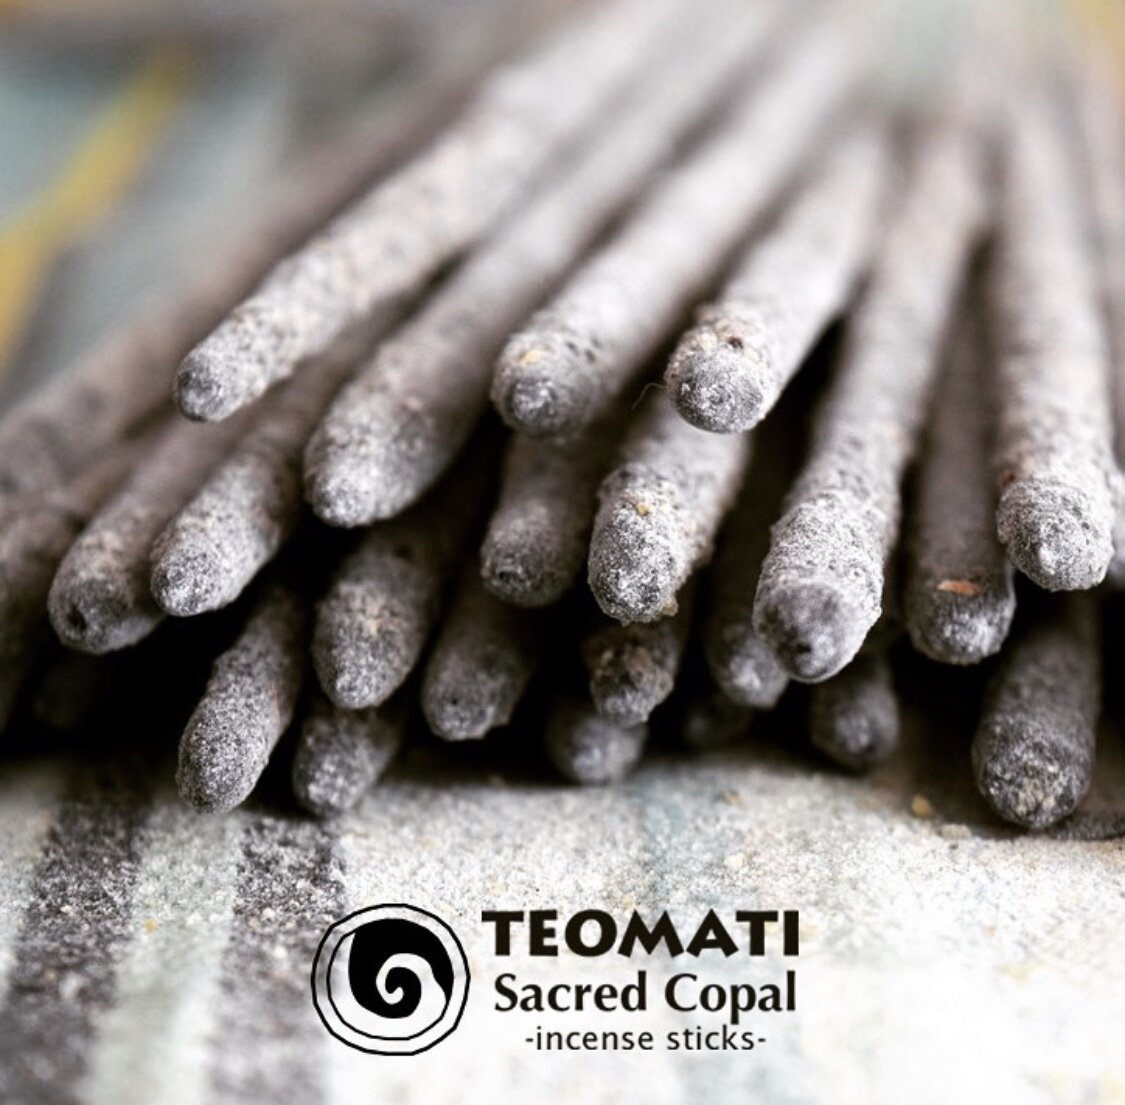 Teomati Sacred Copal